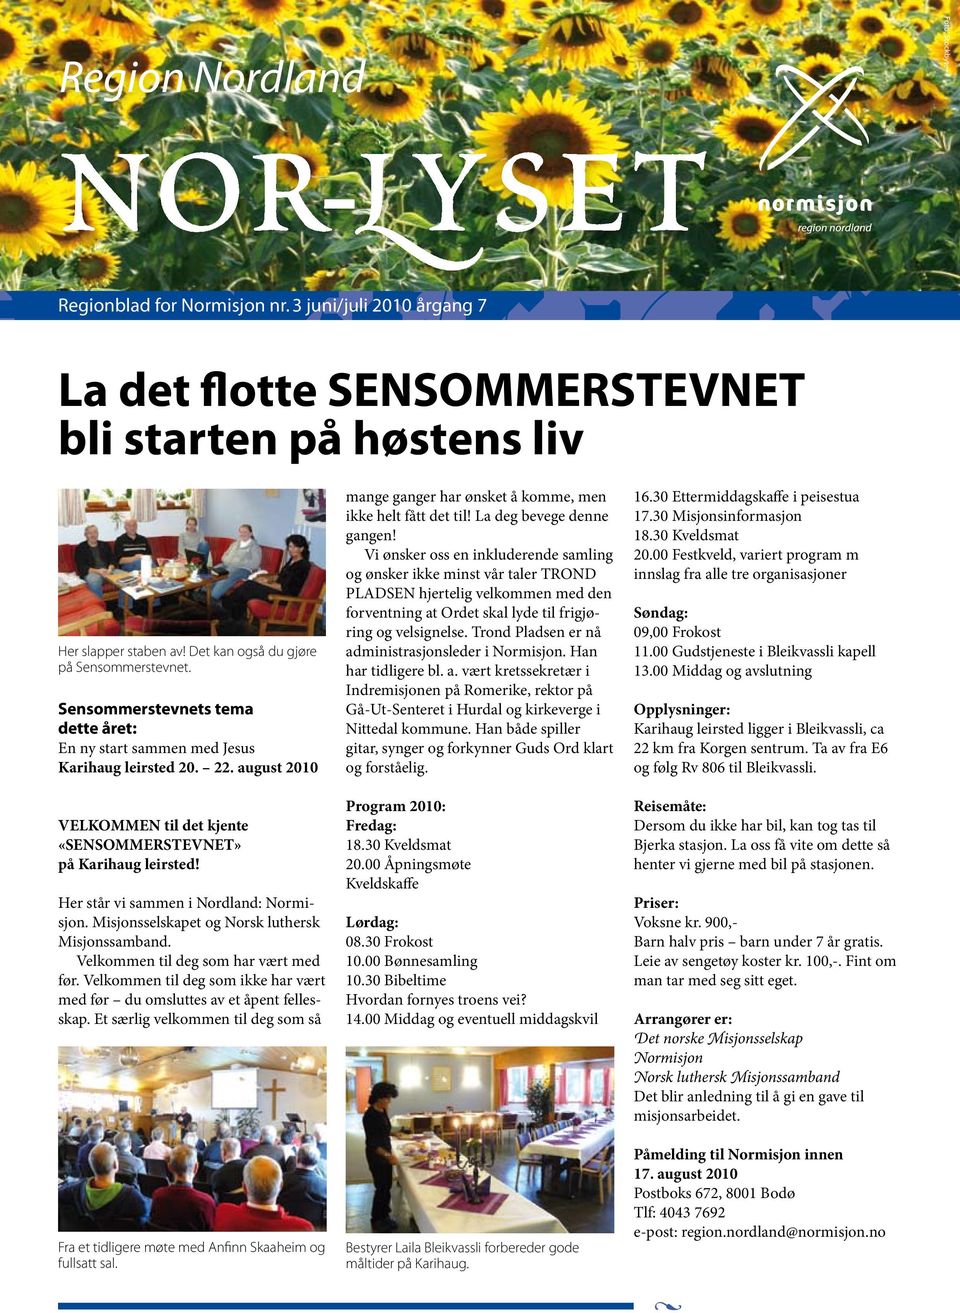 august 2010 VELKOMMEN til det kjente «SENSOMMERSTEVNET» på Karihaug leirsted! Her står vi sammen i Nordland: Normisjon. Misjonsselskapet og Norsk luthersk Misjonssamband.